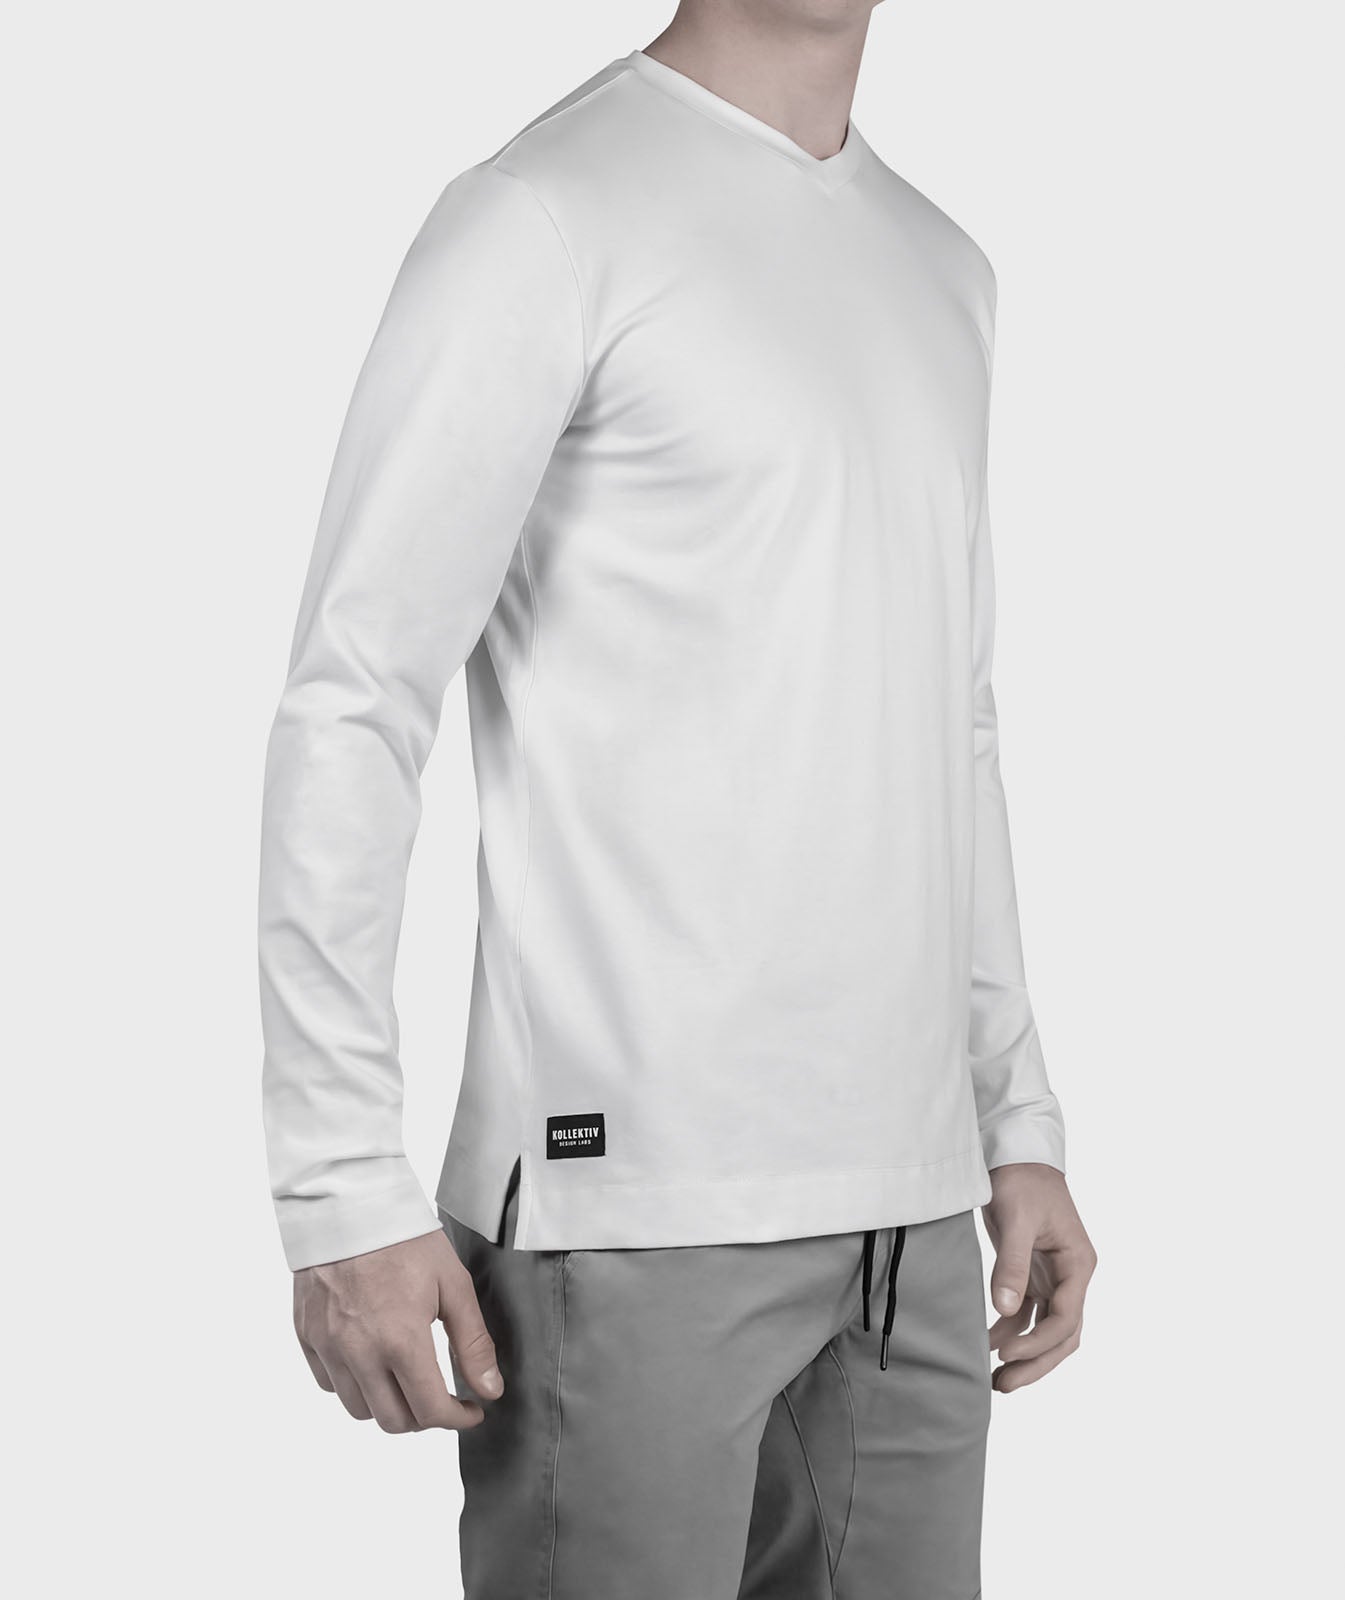 Kollektiv Men's København Long Sleeve Shirt - MyTravelShop.ca